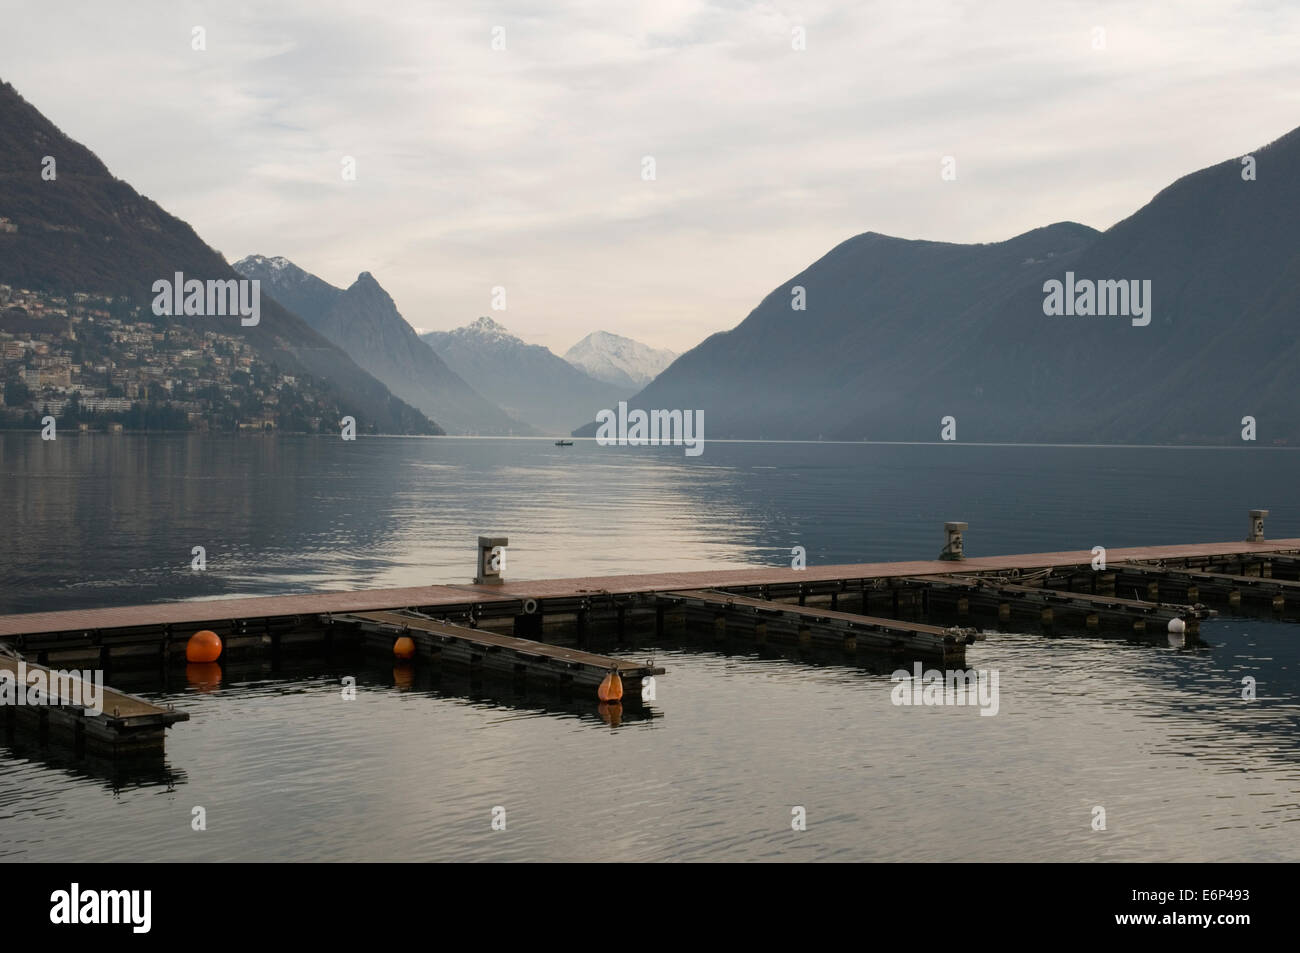 Le Lac de Lugano de Lugano, Suisse Banque D'Images